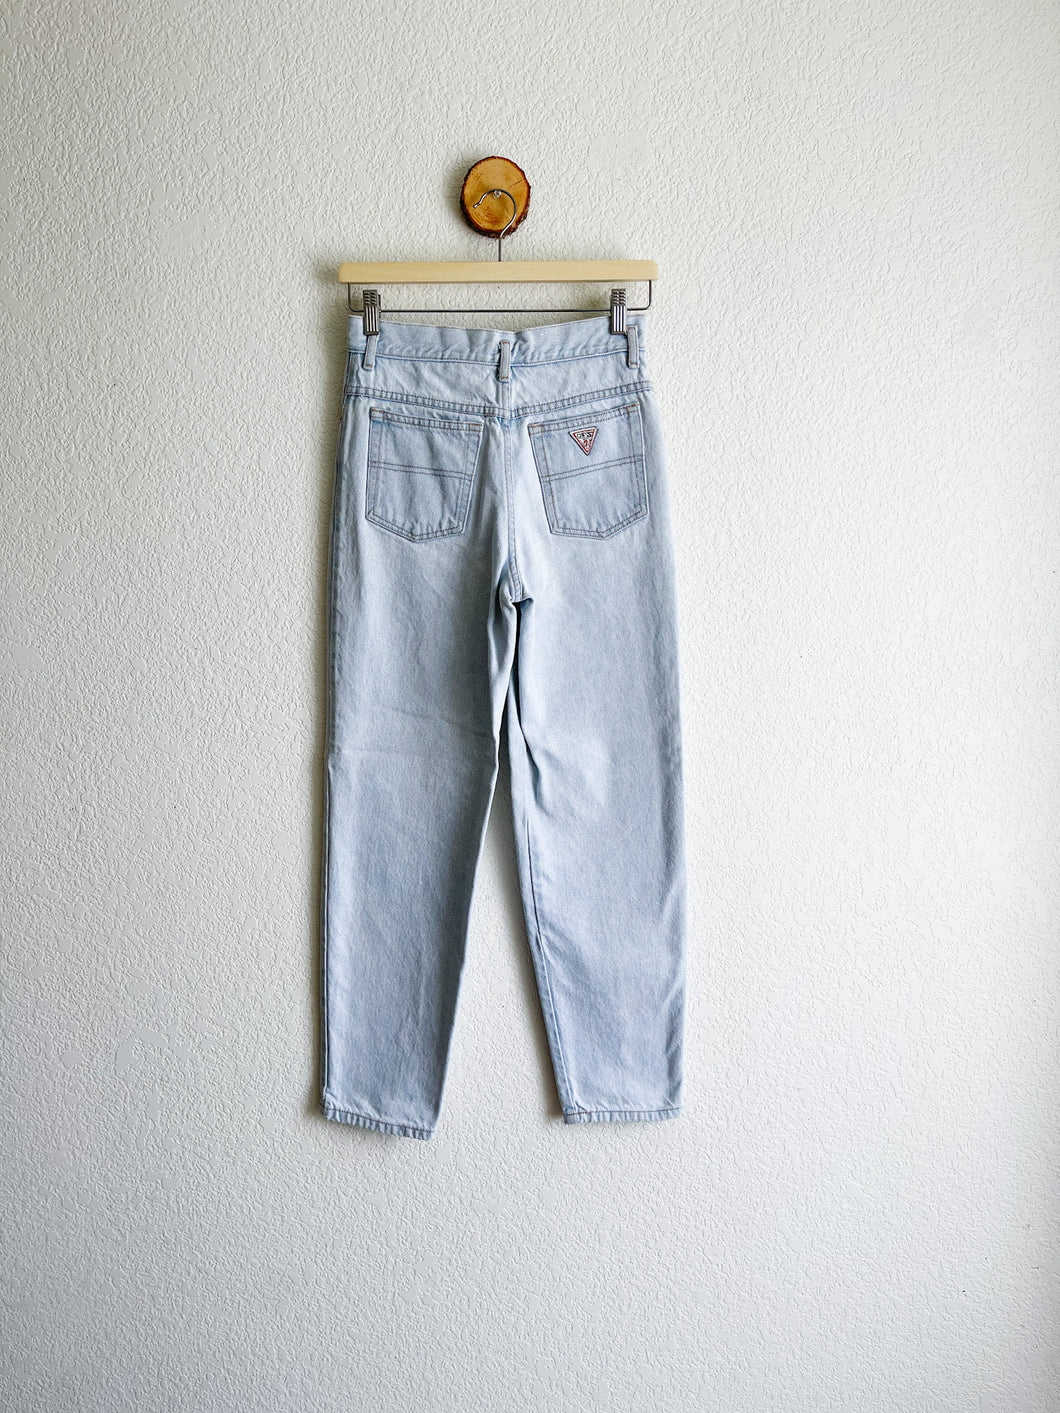 Vintage GUESS Jeans - 26